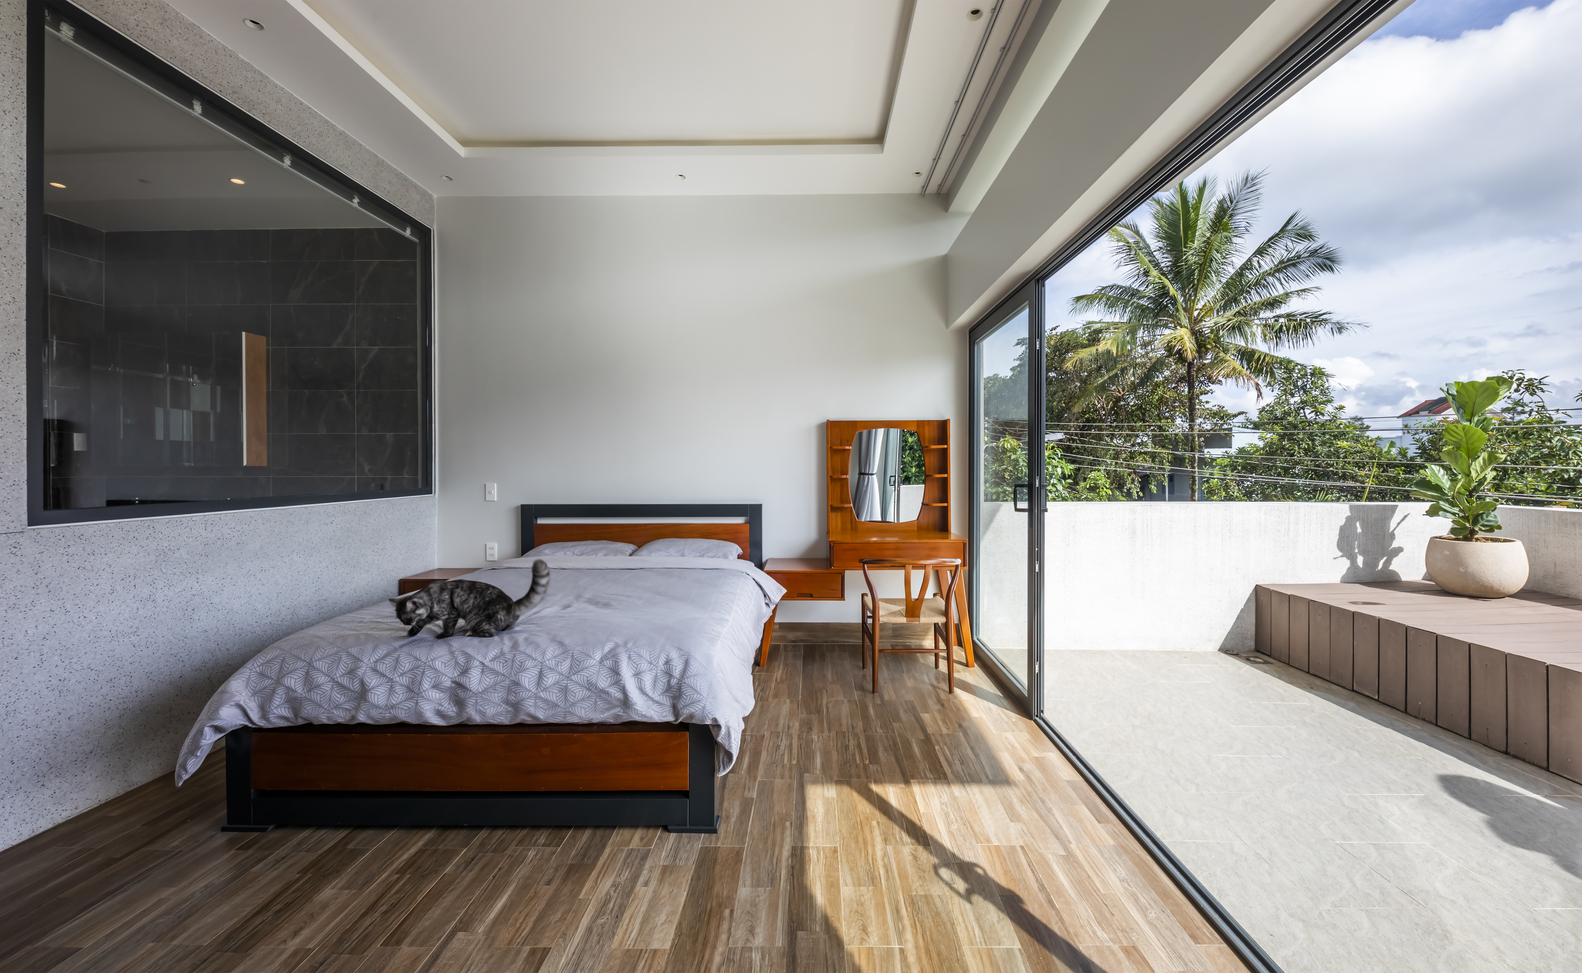 Phòng ngủ lát sàn gỗ ấm áp, kết nối với không gian ngoài trời bằng cửa kính trượt trong suốt, từ đây có thể phóng tầm mắt ngắm nhìn khung cảnh xanh mát của cao nguyên.